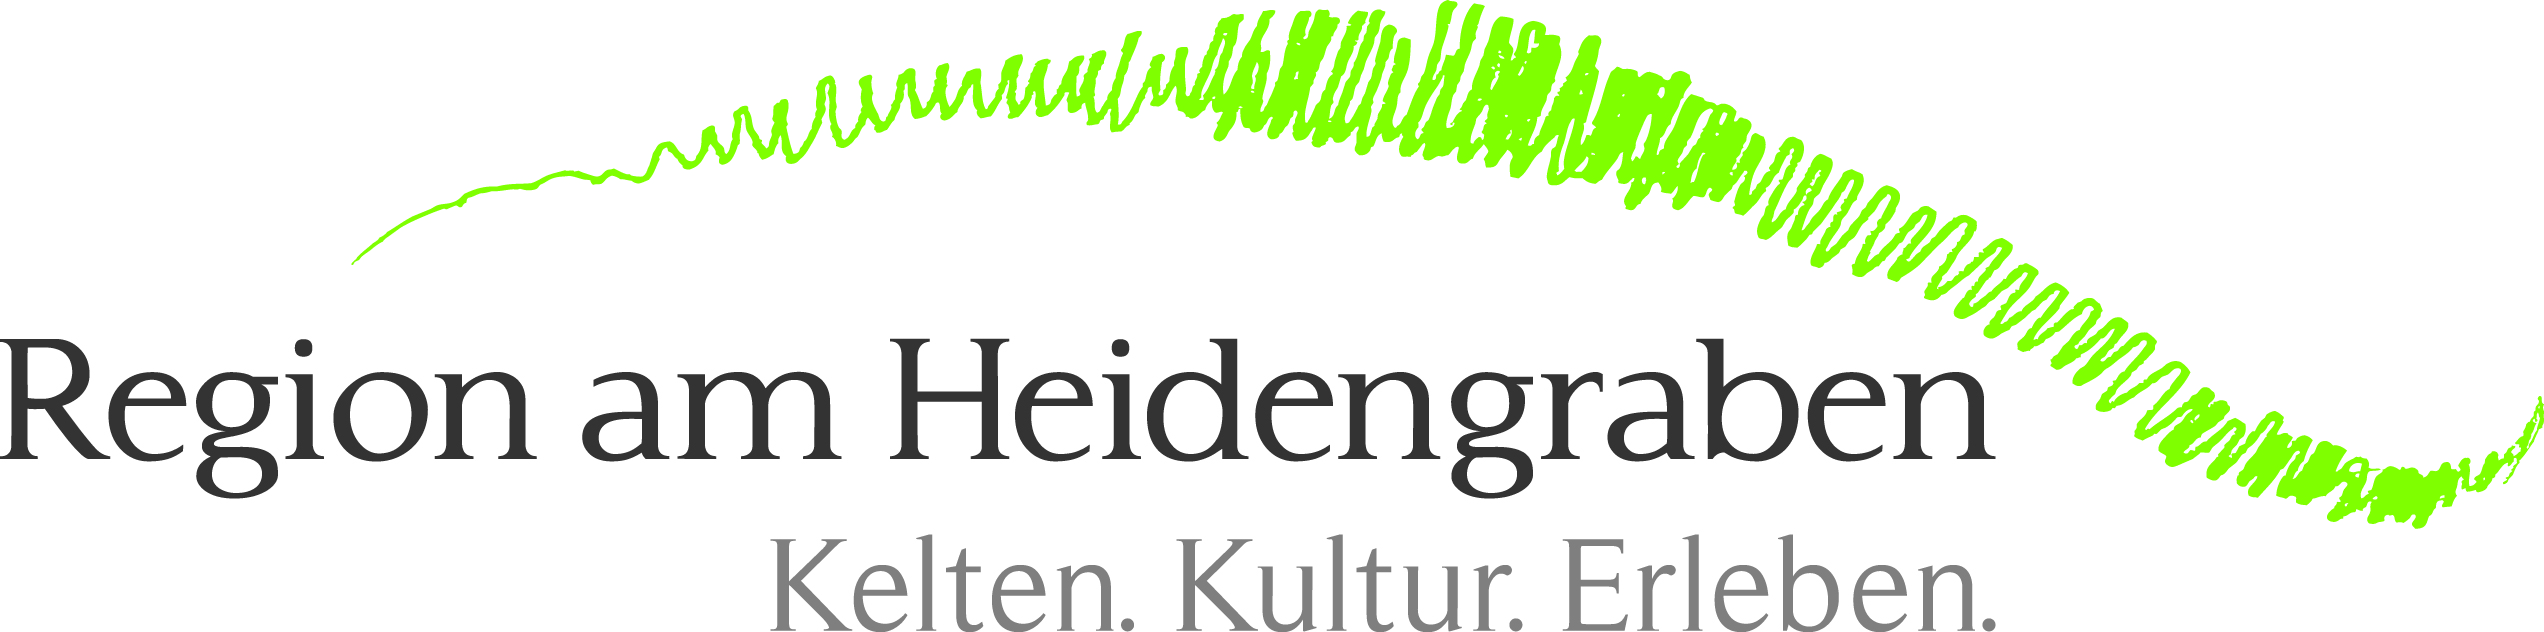 
    
            
                    Zweckverband Region am Heidengraben Logo
                
        
